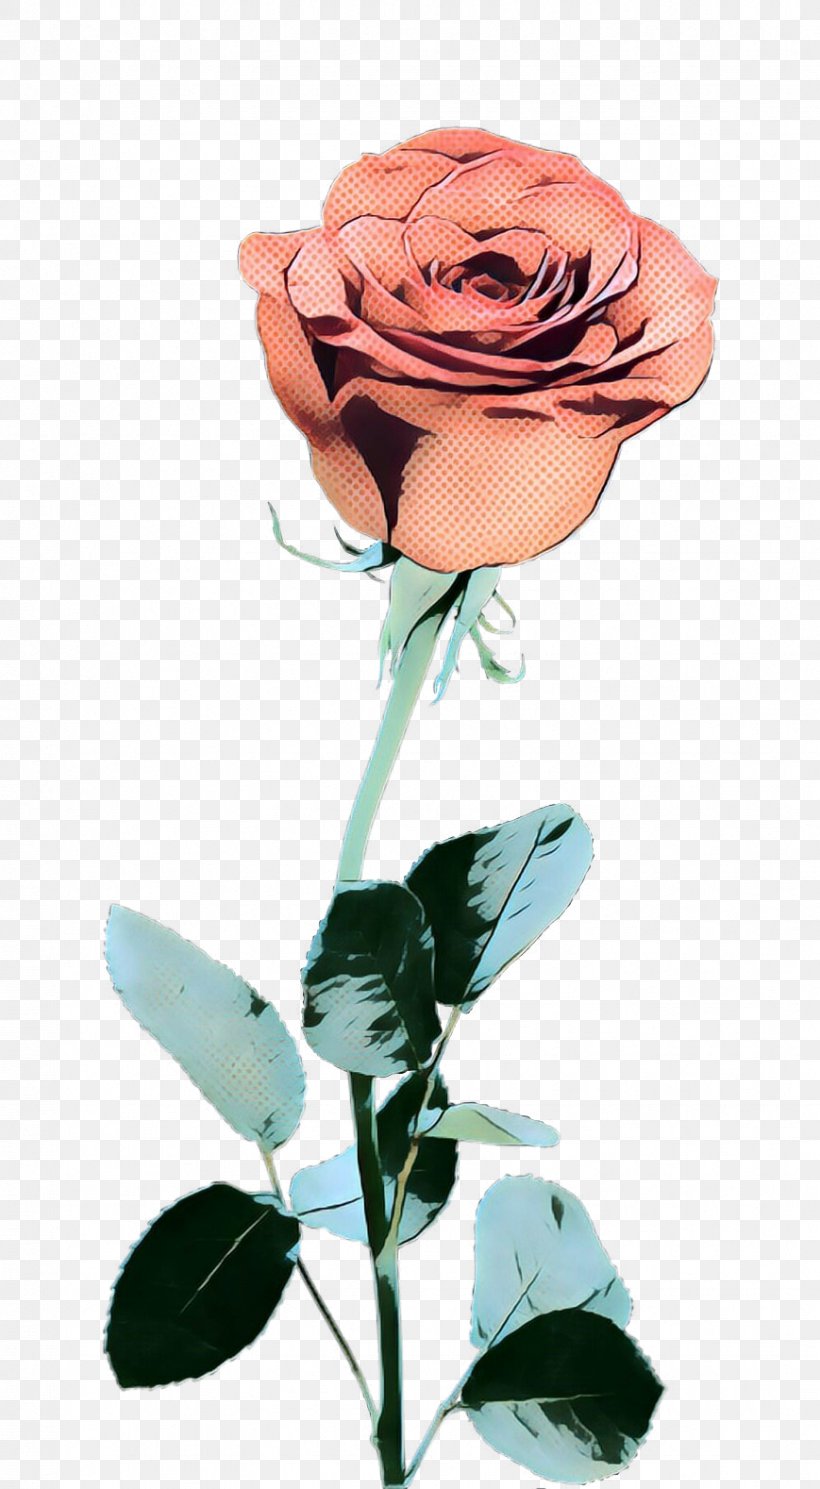 Garden Roses Cut Flowers Floral Design Illustration, PNG, 869x1578px, Garden Roses, Blue Rose, Botany, Cut Flowers, Floral Design Download Free